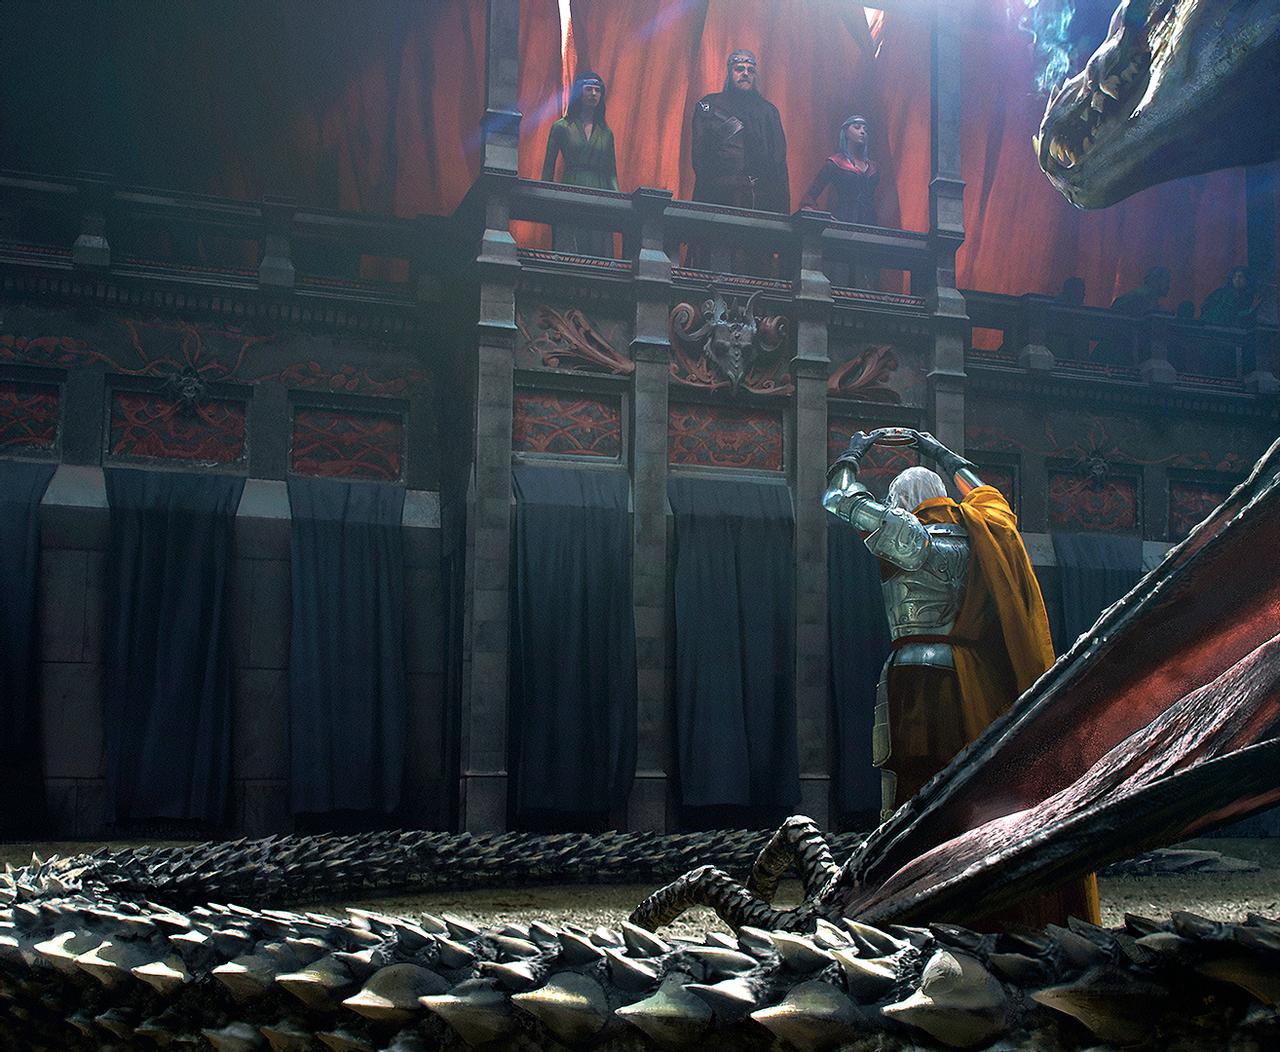 Princess Rhaenyra Targaryen &Amp; Prince Daemon Targaryen House Of The Dragon Wallpapers